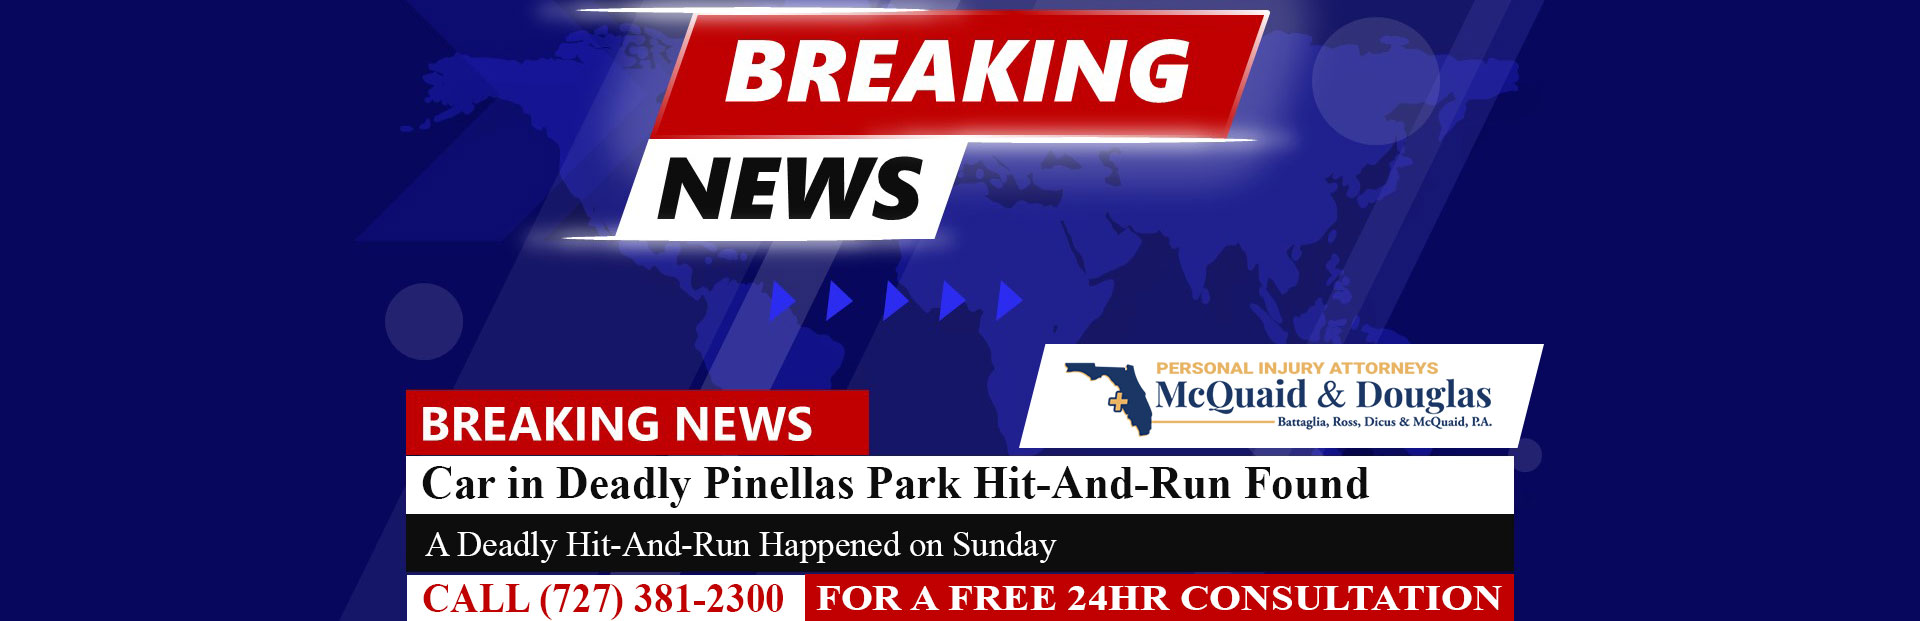 [04-03-24] Se encontró un automóvil en el mortal atropello y fuga de Pinellas Park, se está buscando al conductor